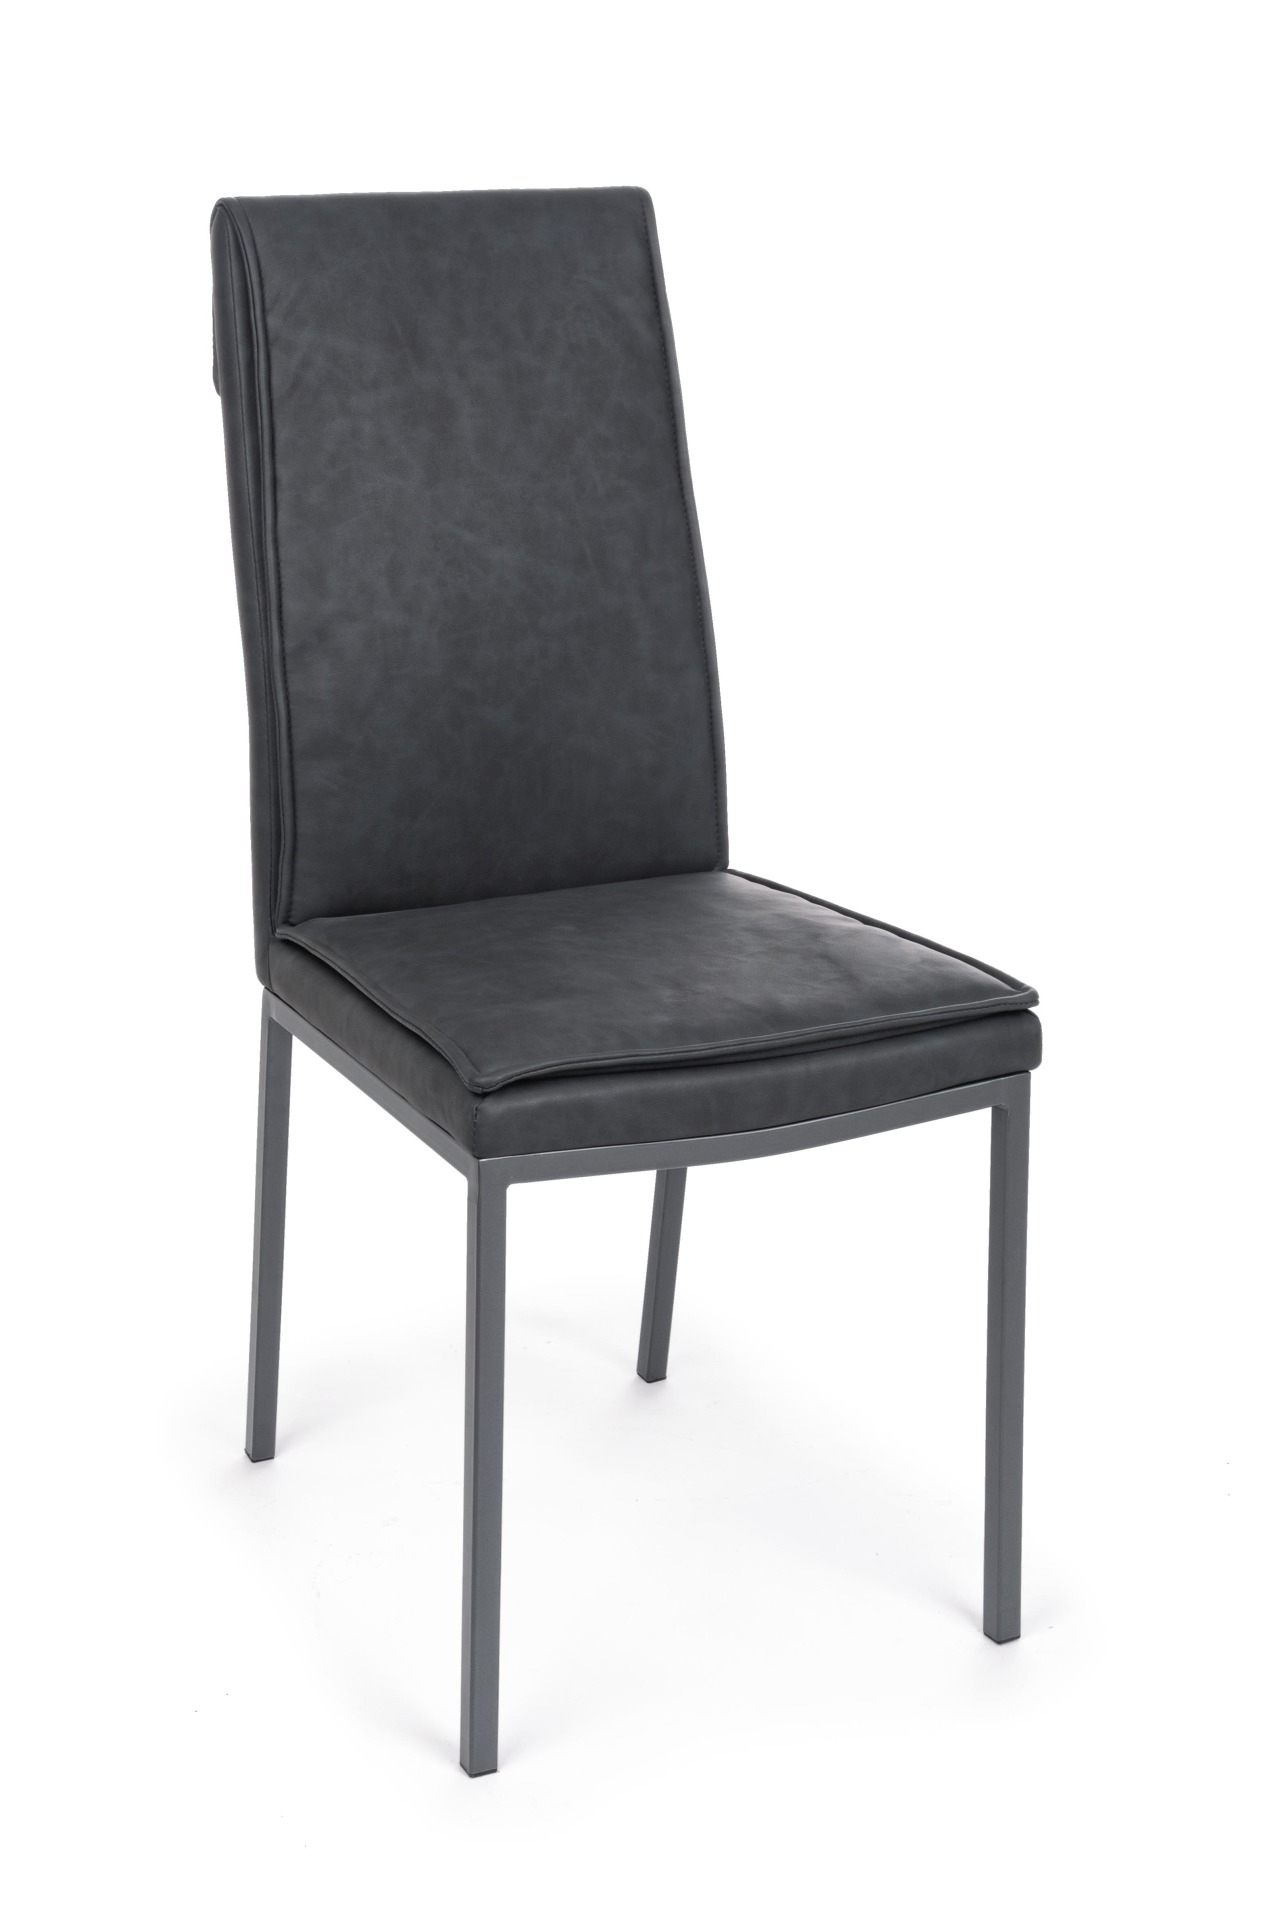 Der Esszimmerstuhl Sofie überzeugt mit seinem klassischen Design. Gefertigt wurde der Stuhl aus Kunstleder, welches einen Anthrazit Farbton hat. Das Gestell ist aus Metall und ist Schwarz. Die Sitzhöhe beträgt 49 cm.